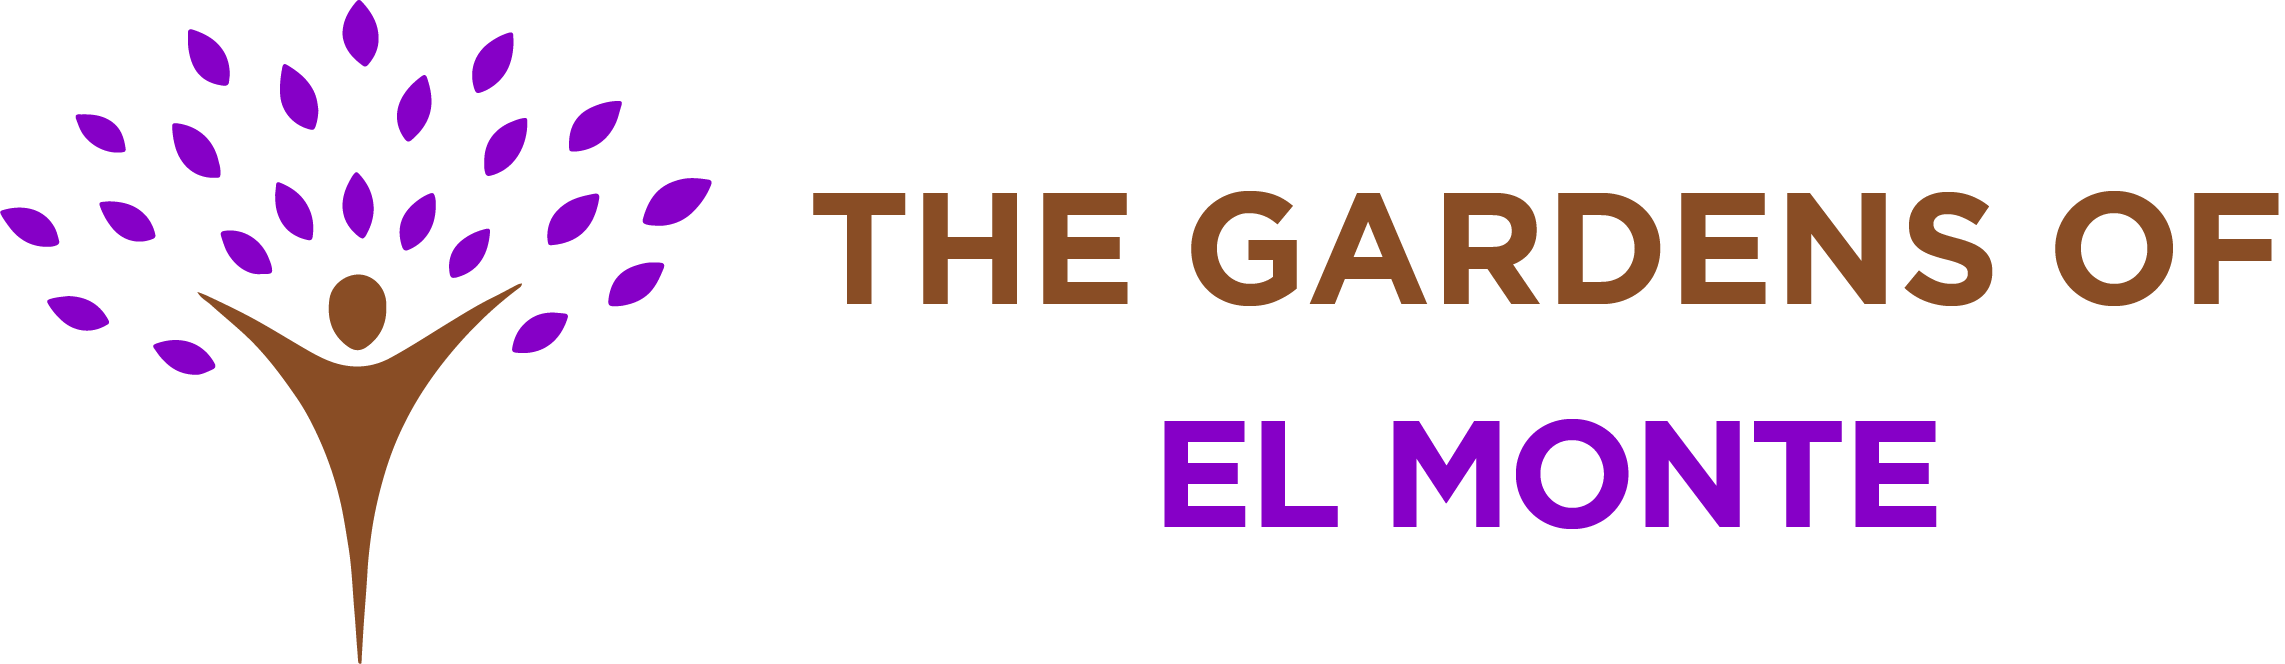 Gardens El Monte logo